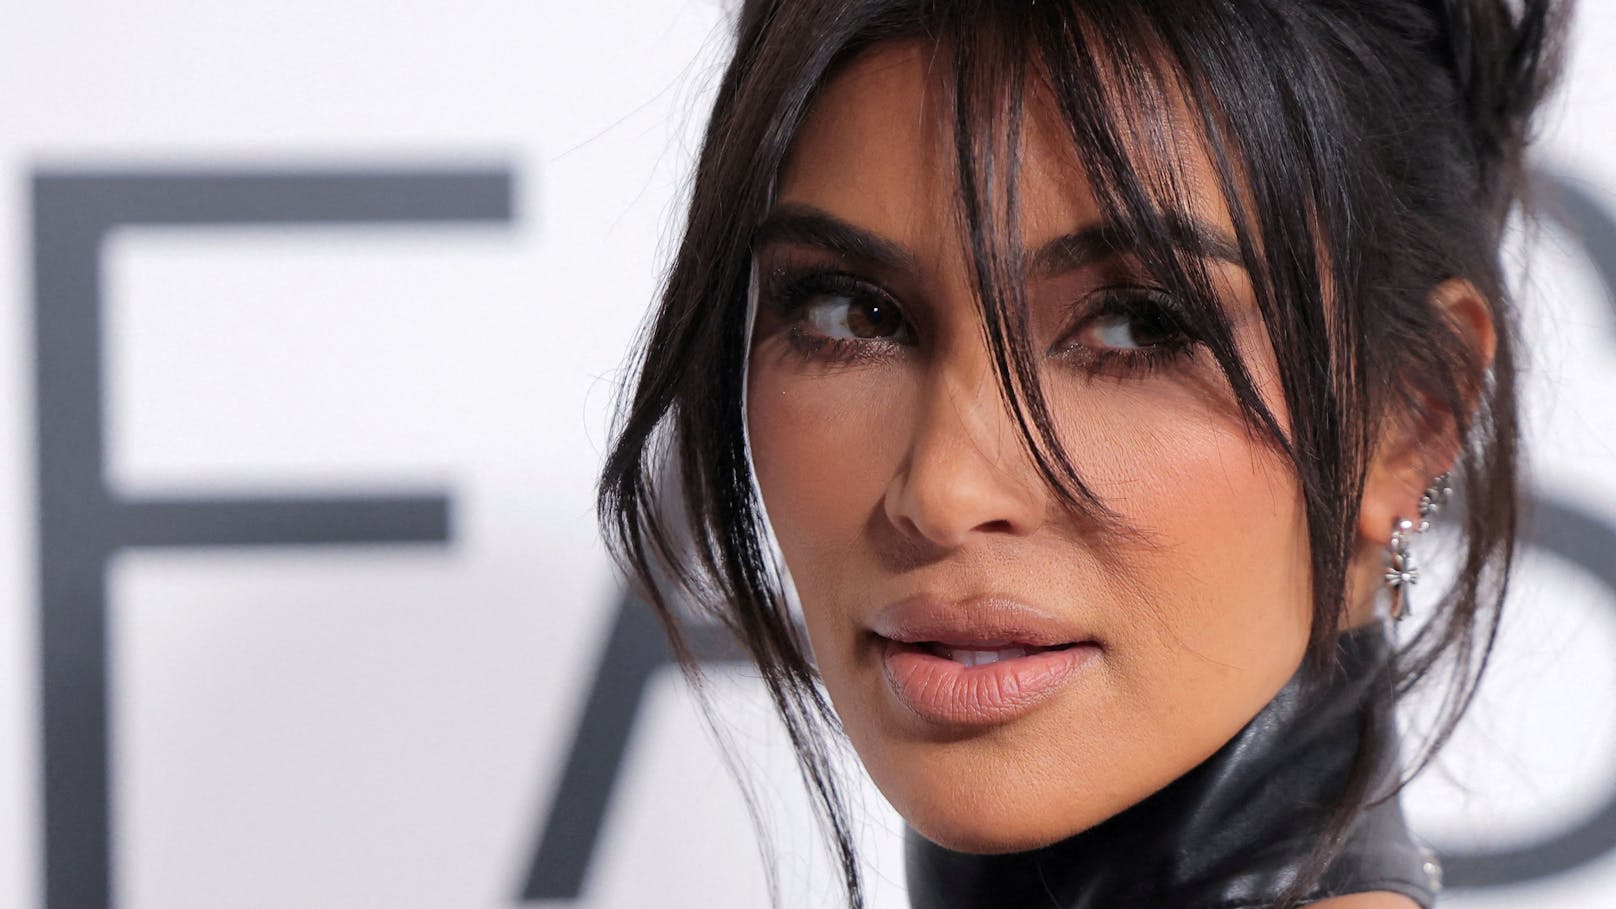 Auch Reality-Star Kim Kardashian soll ein Song gewidmet sein. "thanK you aIMee" sei ein Disssong gegen die 43-Jährige.